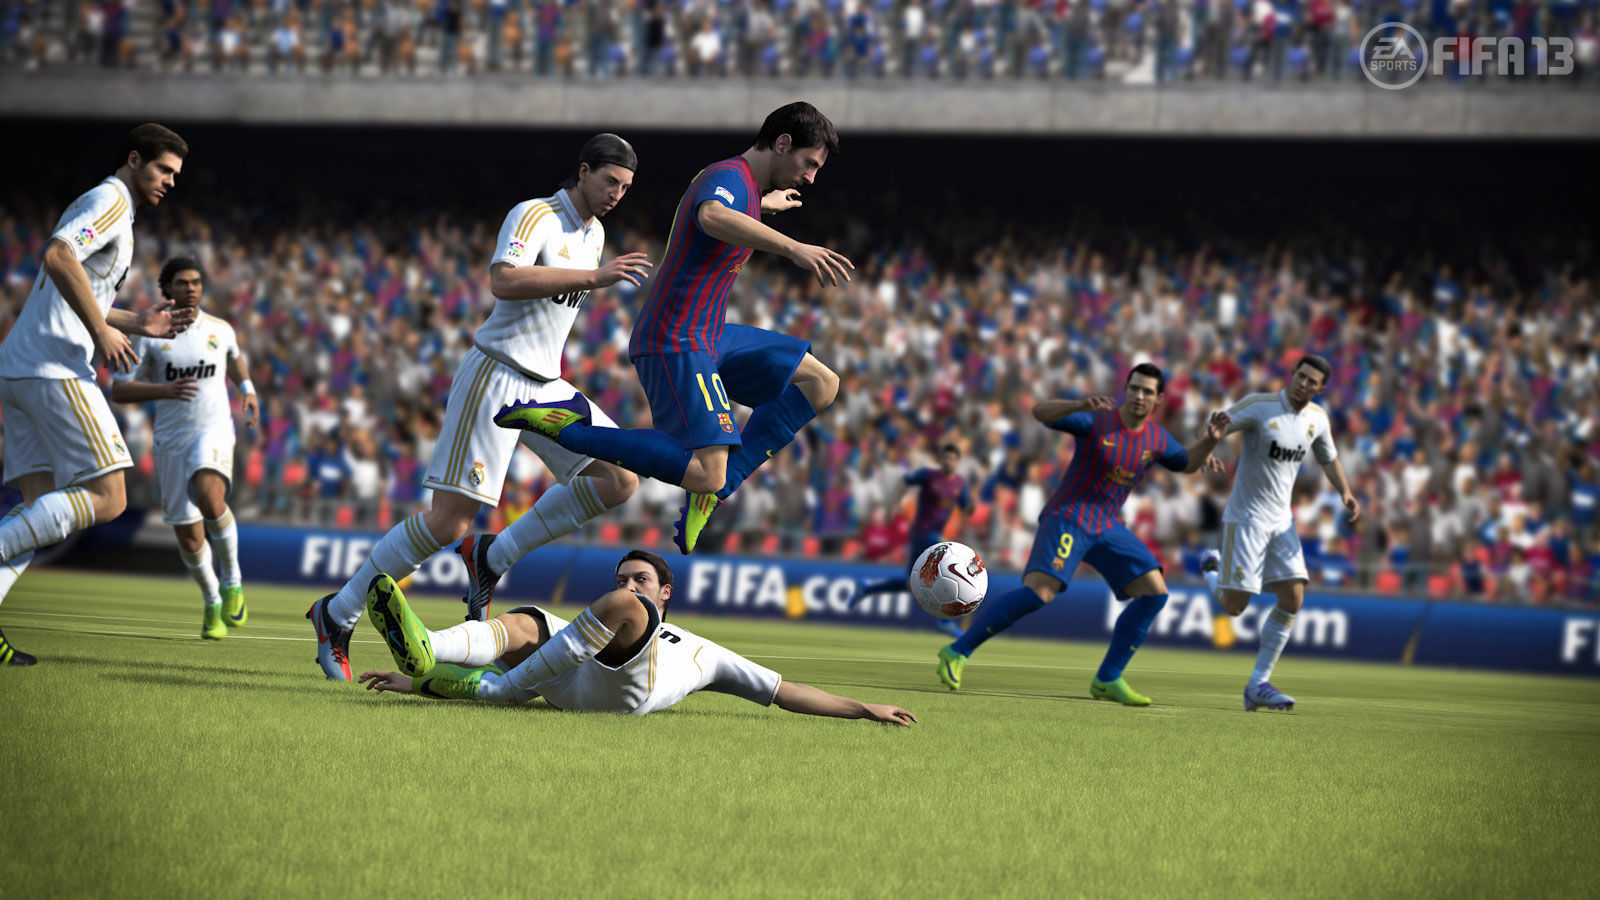 Ya está disponible la demo de FIFA 13 